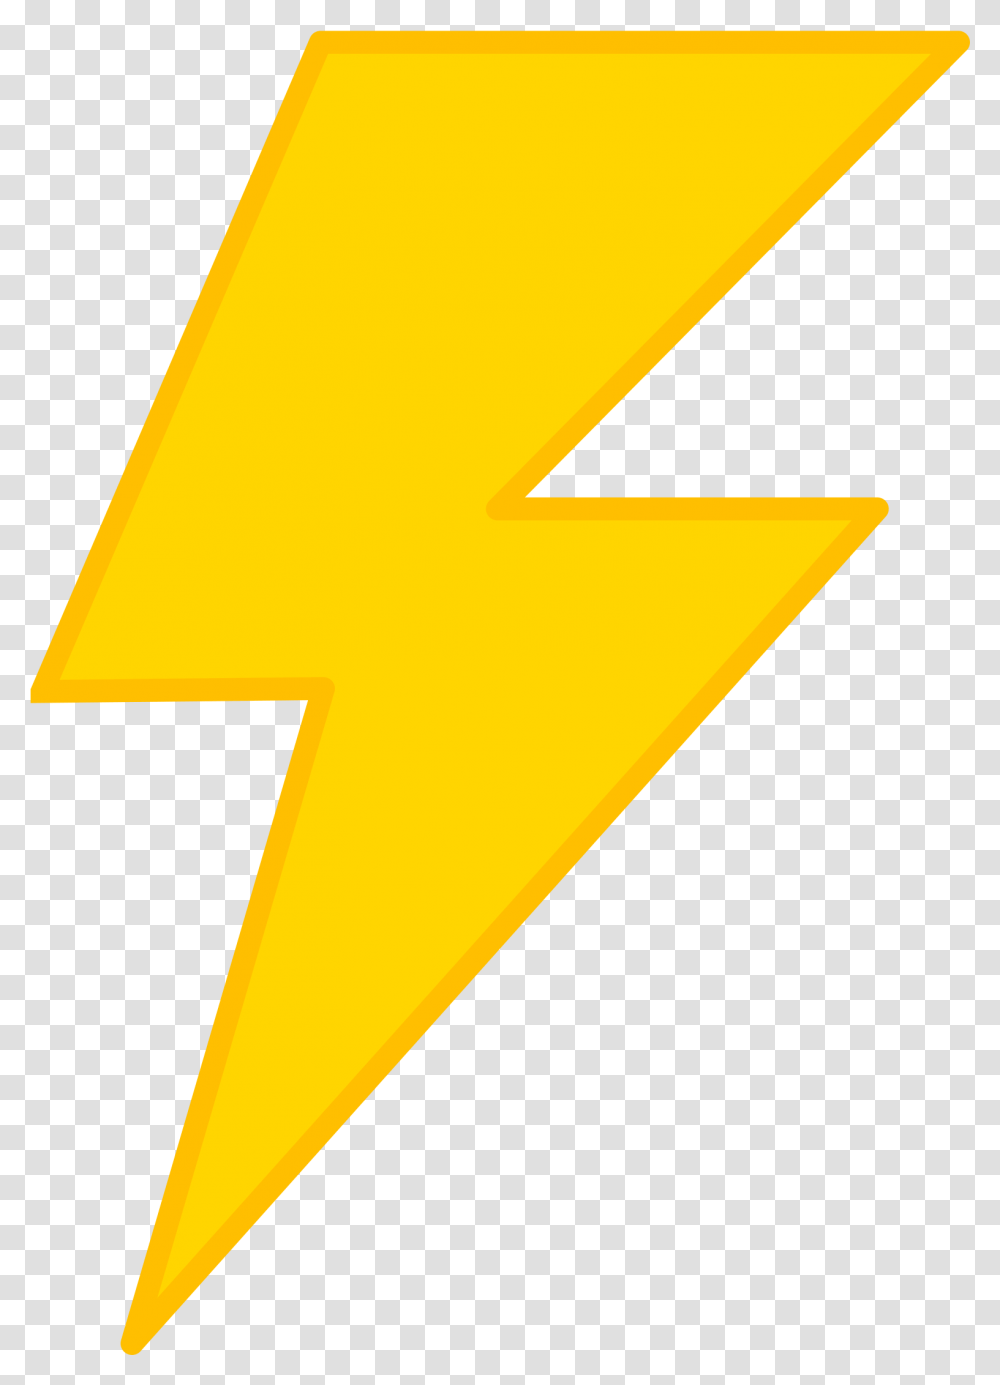 Clip Art Lightning Bolt, Logo, Trademark, Star Symbol Transparent Png